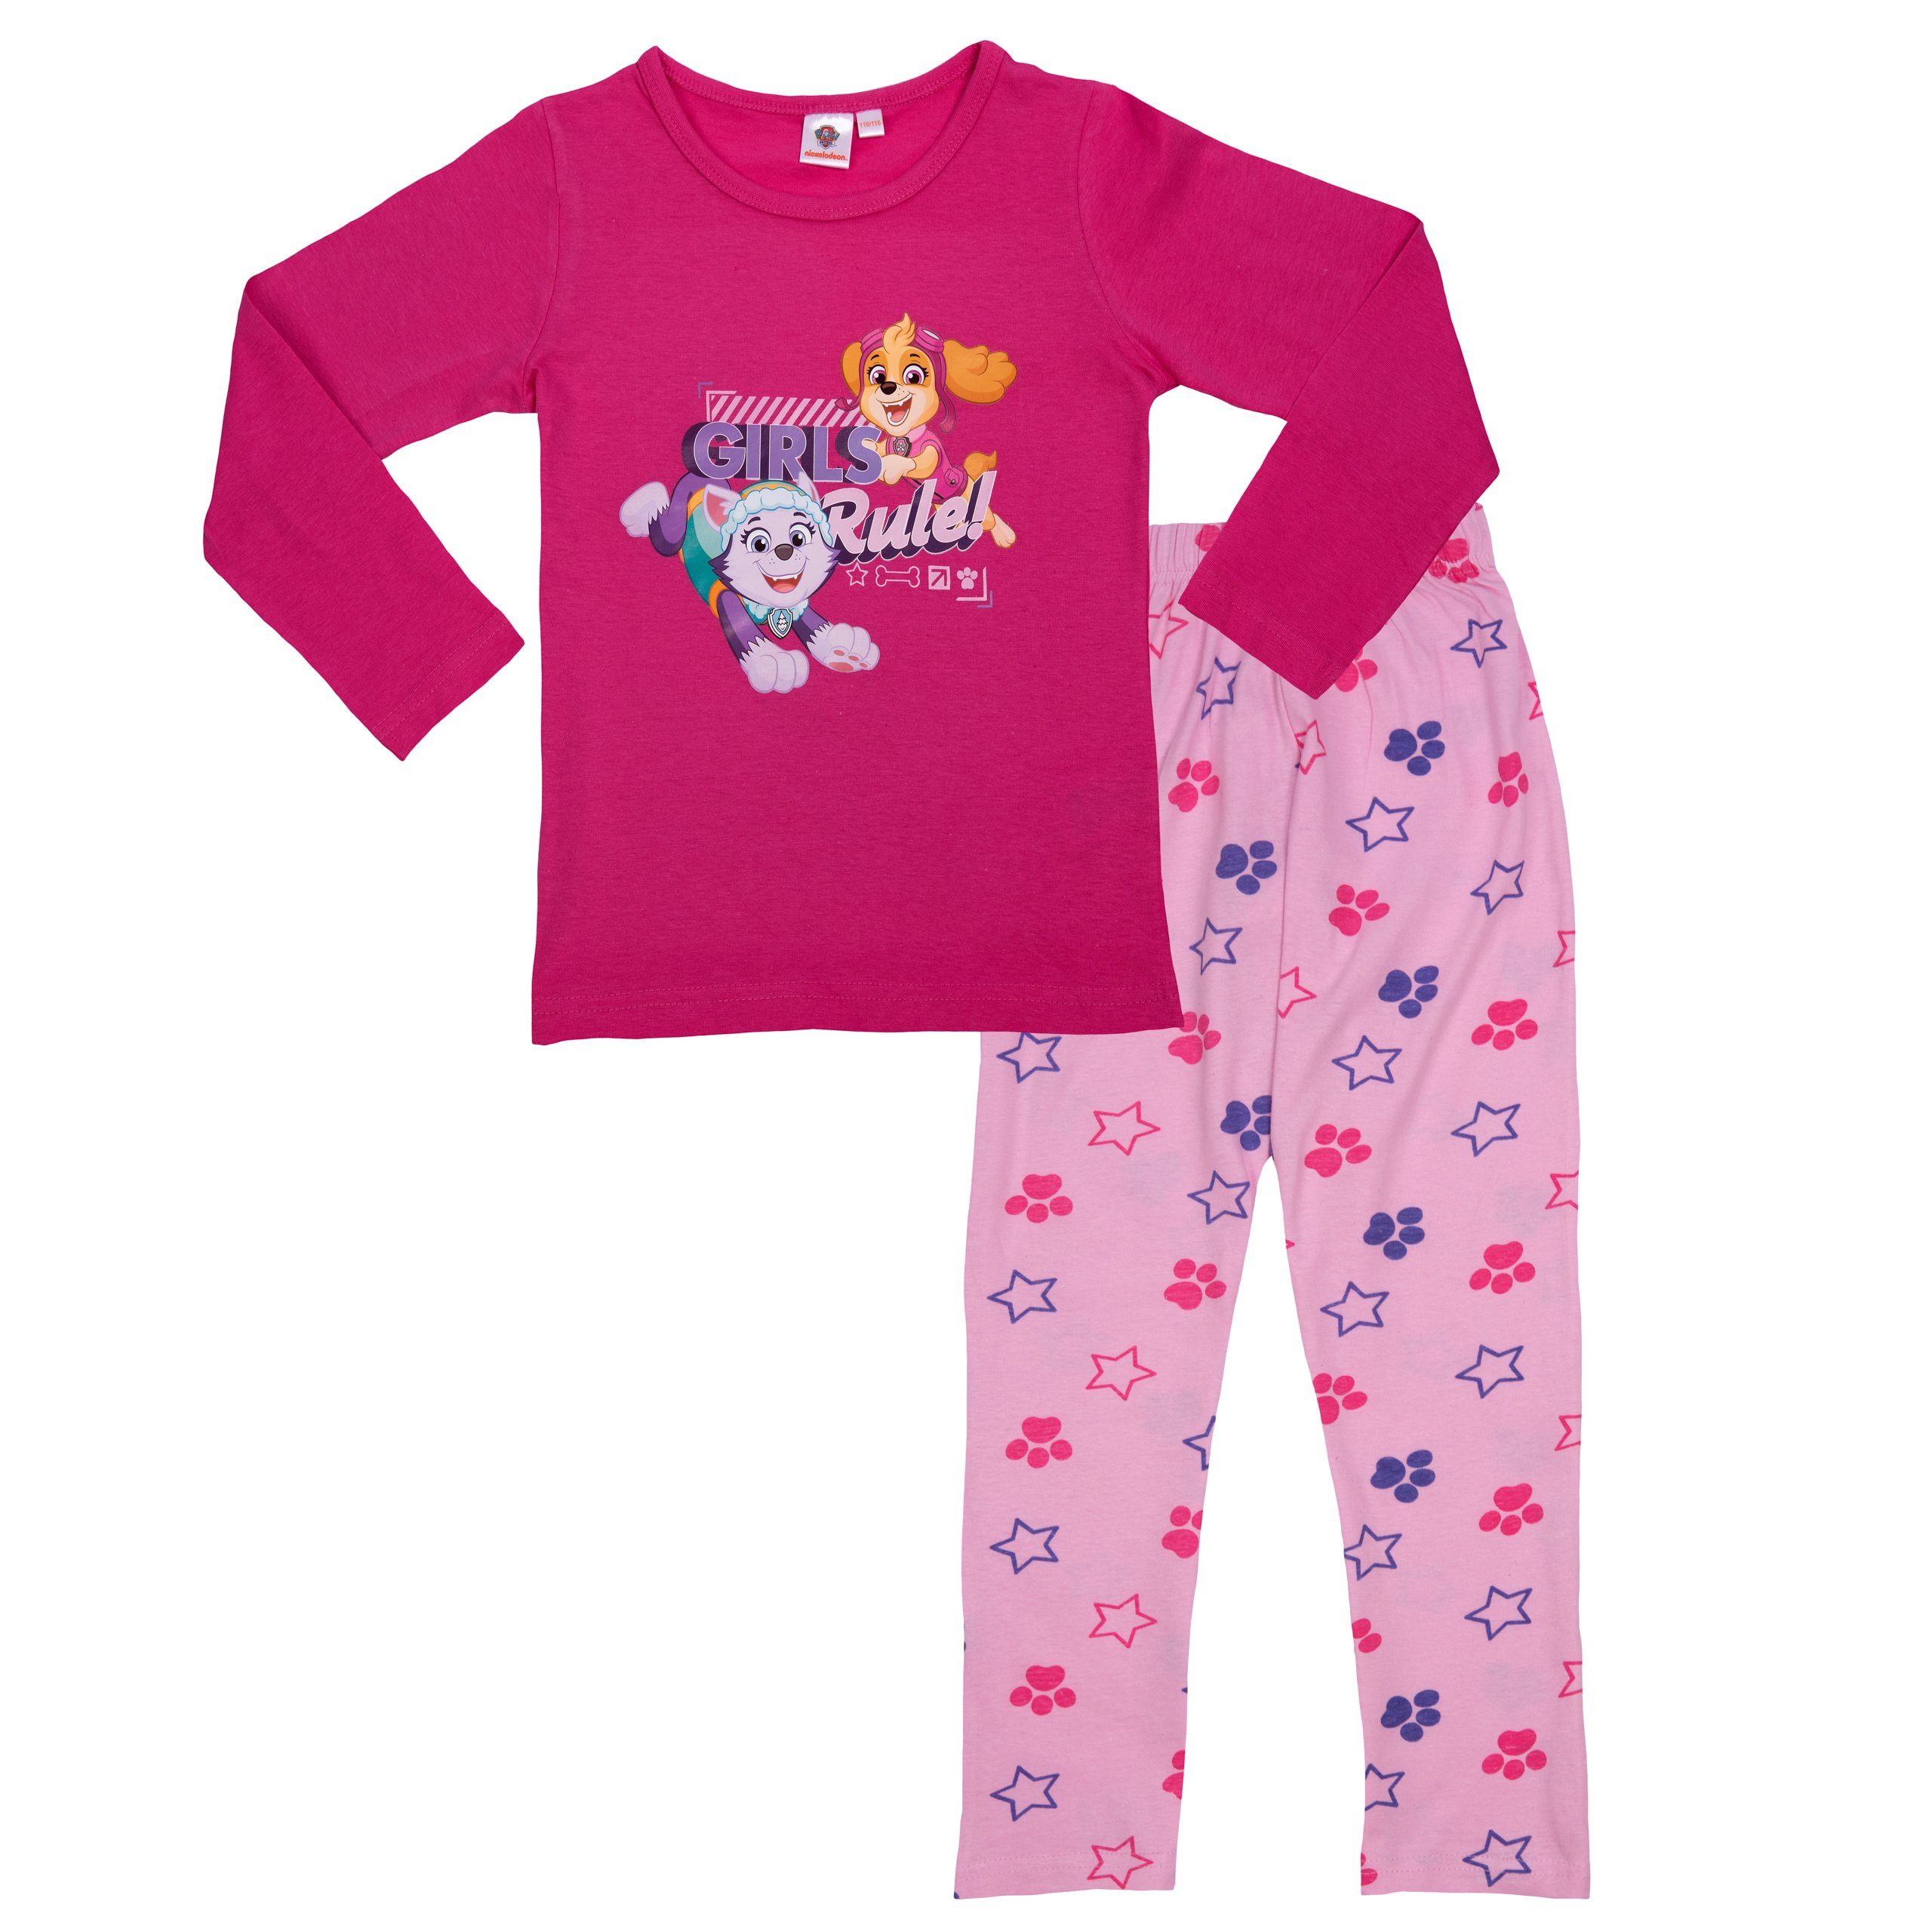 United Labels® Schlafanzug Paw Patrol Schlafanzug für Mädchen - Girls Rule - Langarm Rosa/Pink